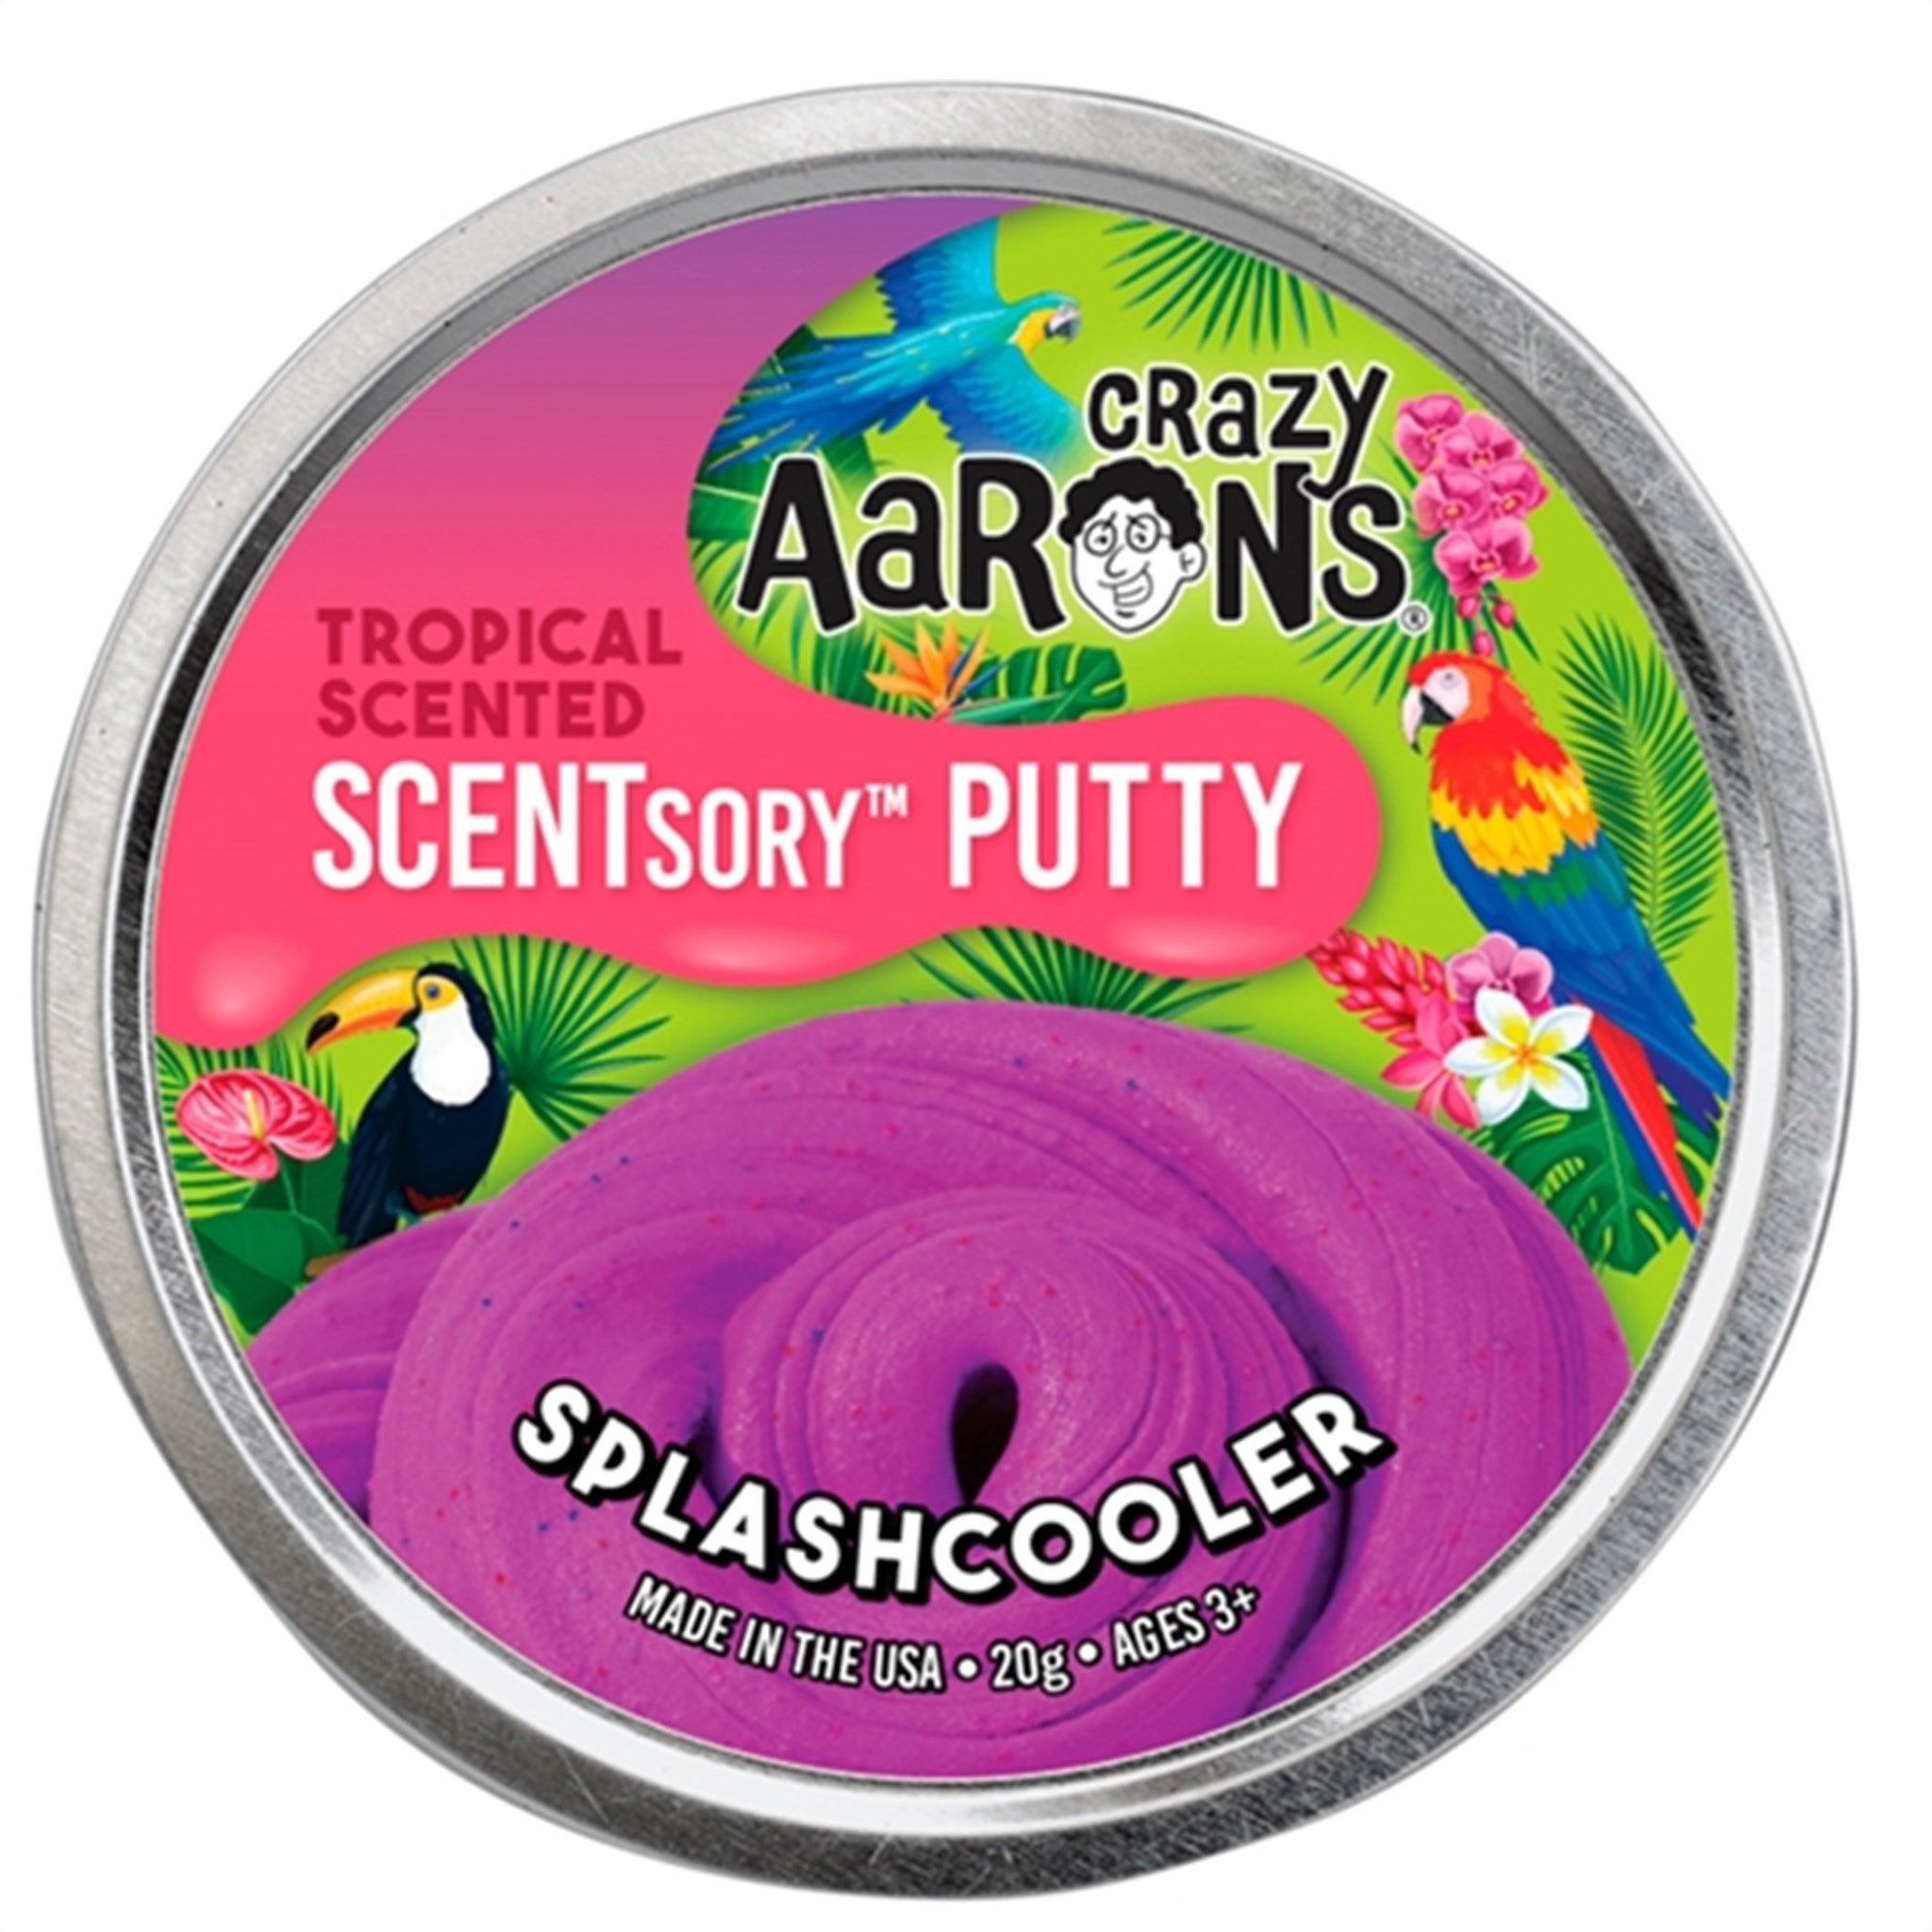 Crazy Aaron's® Scentsory Putty - Splashcooler